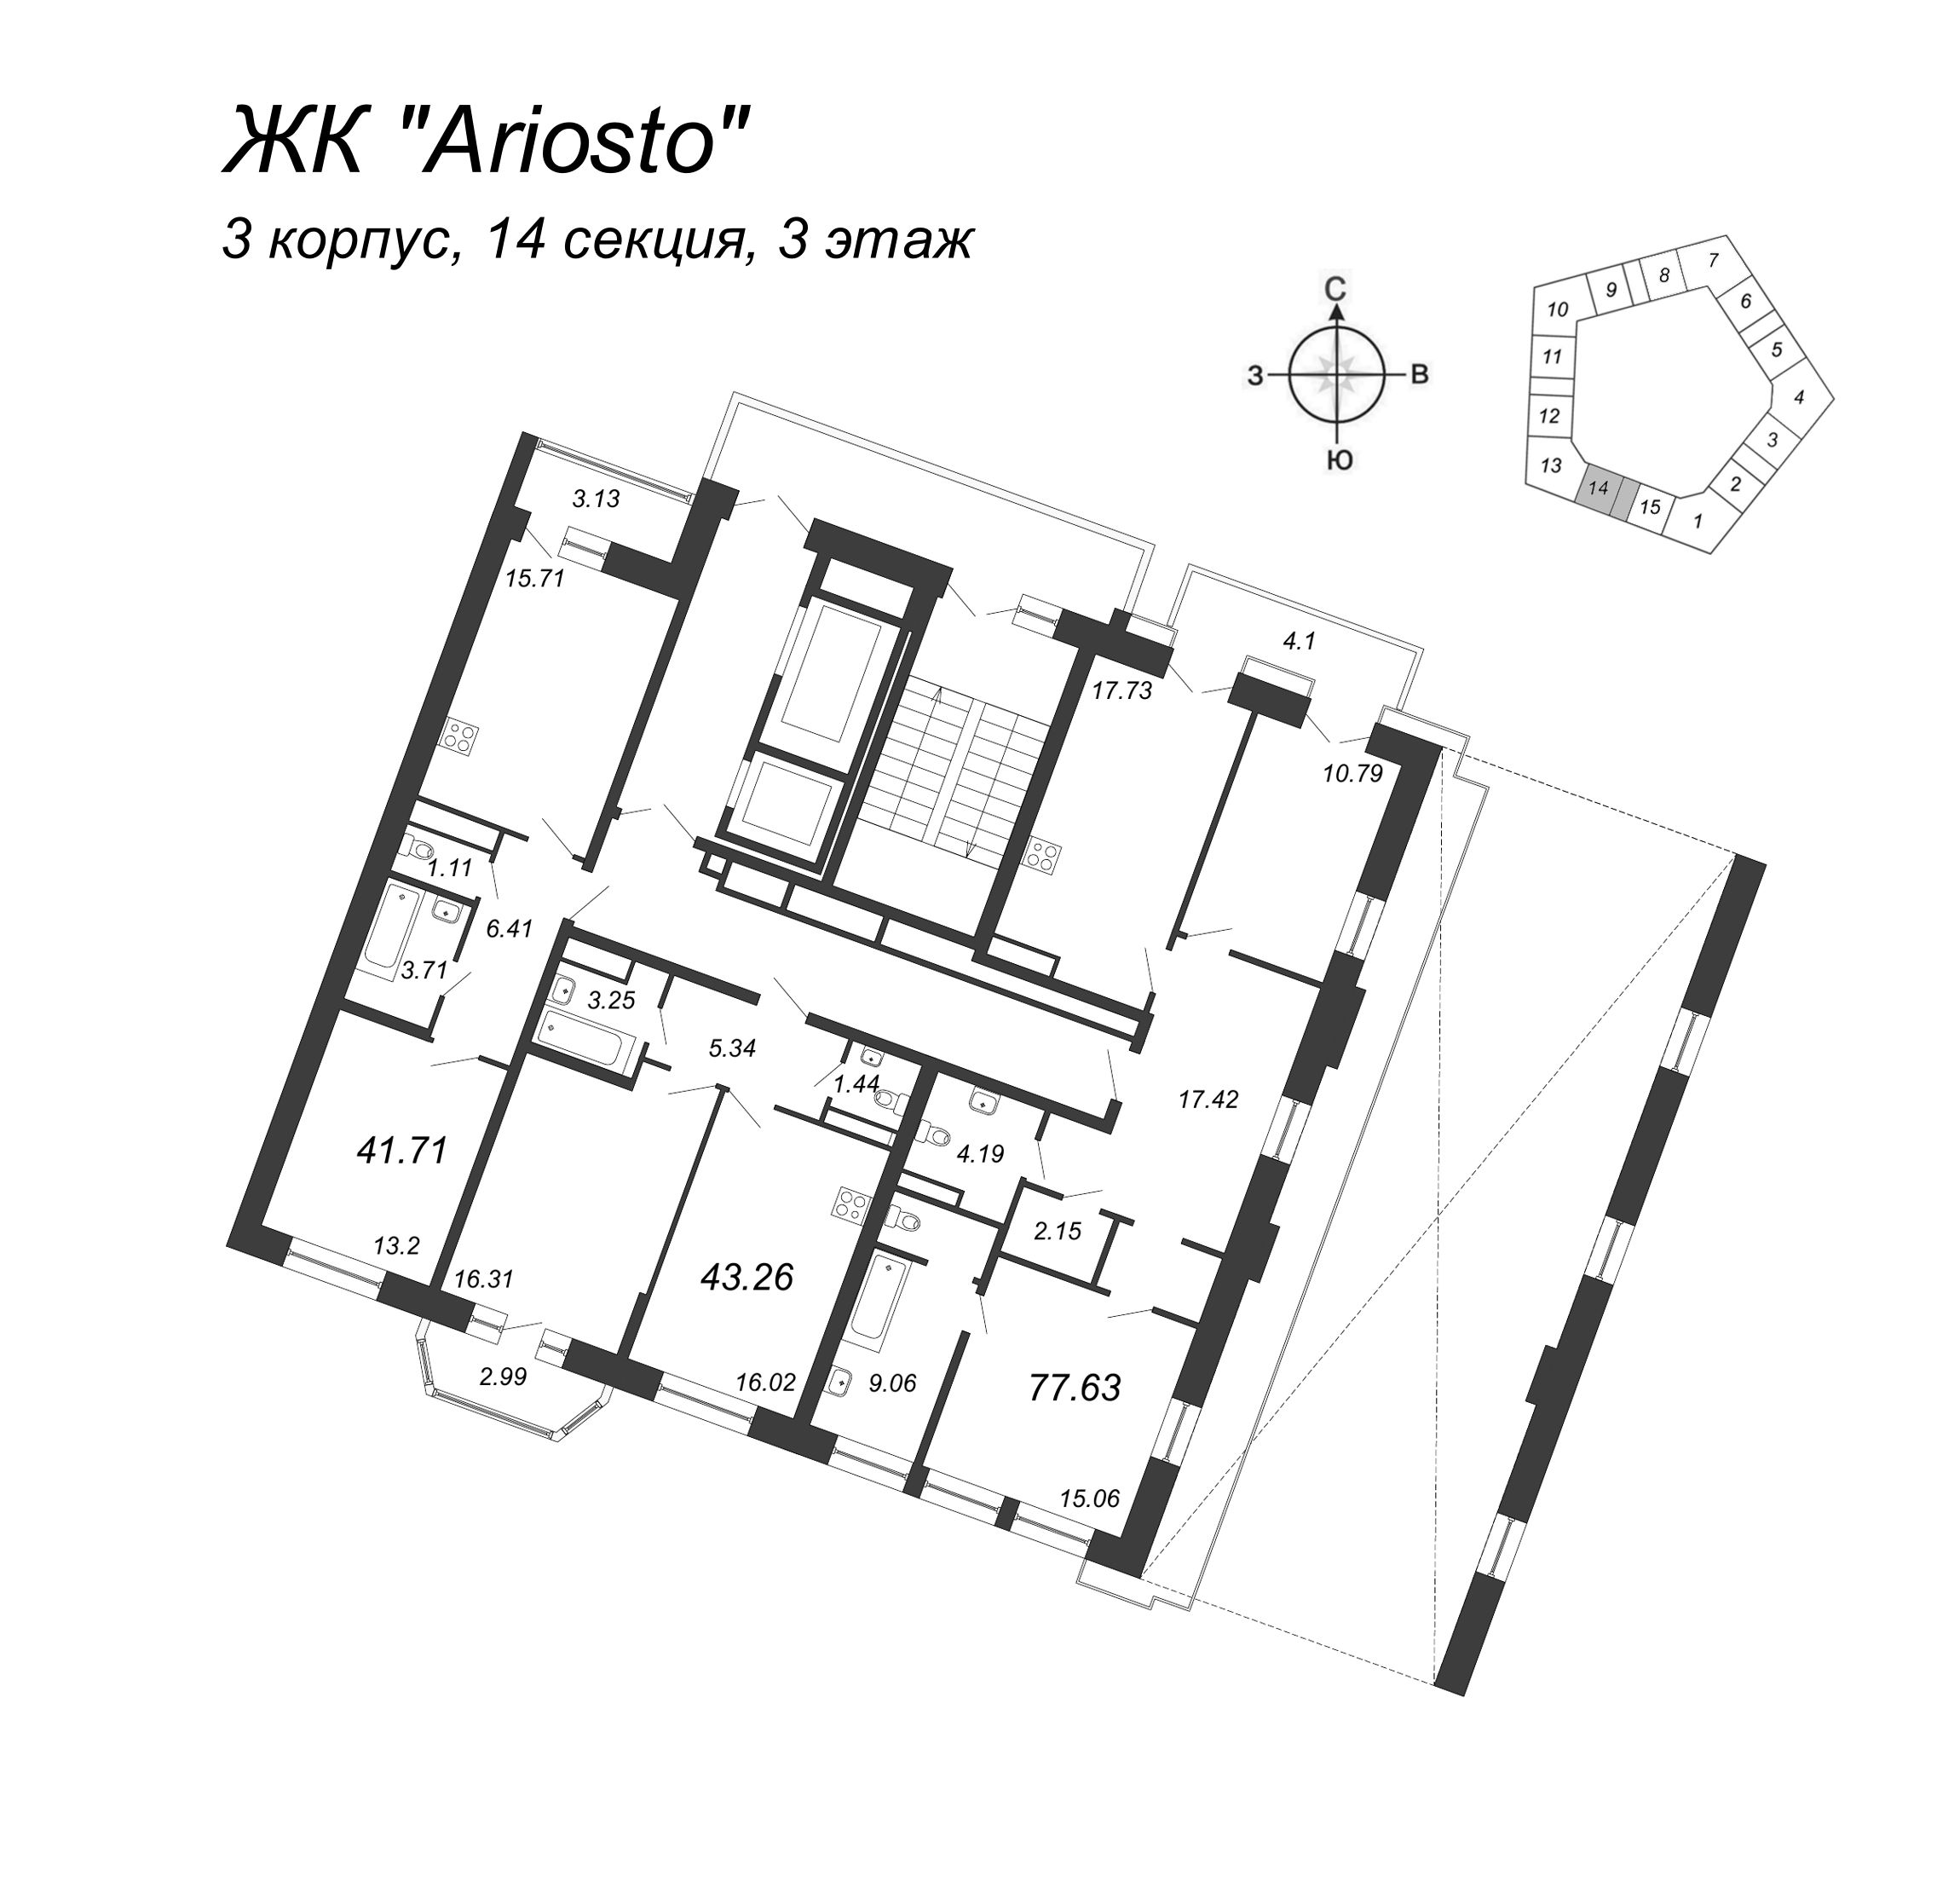 3-комнатная (Евро) квартира, 77.63 м² в ЖК "Ariosto" - планировка этажа